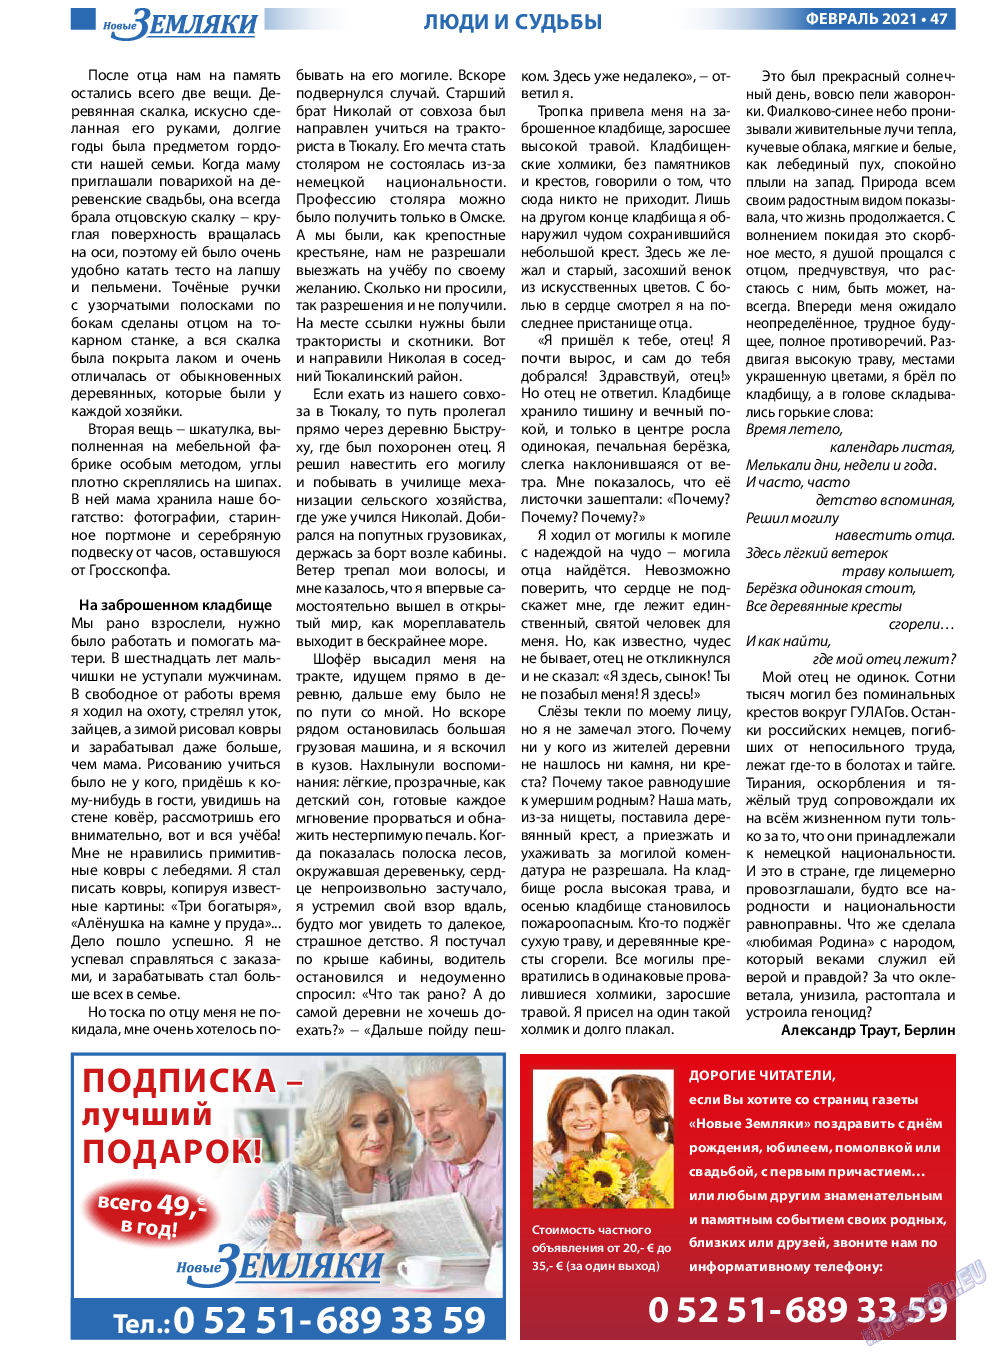 Новые Земляки, газета. 2021 №2 стр.47